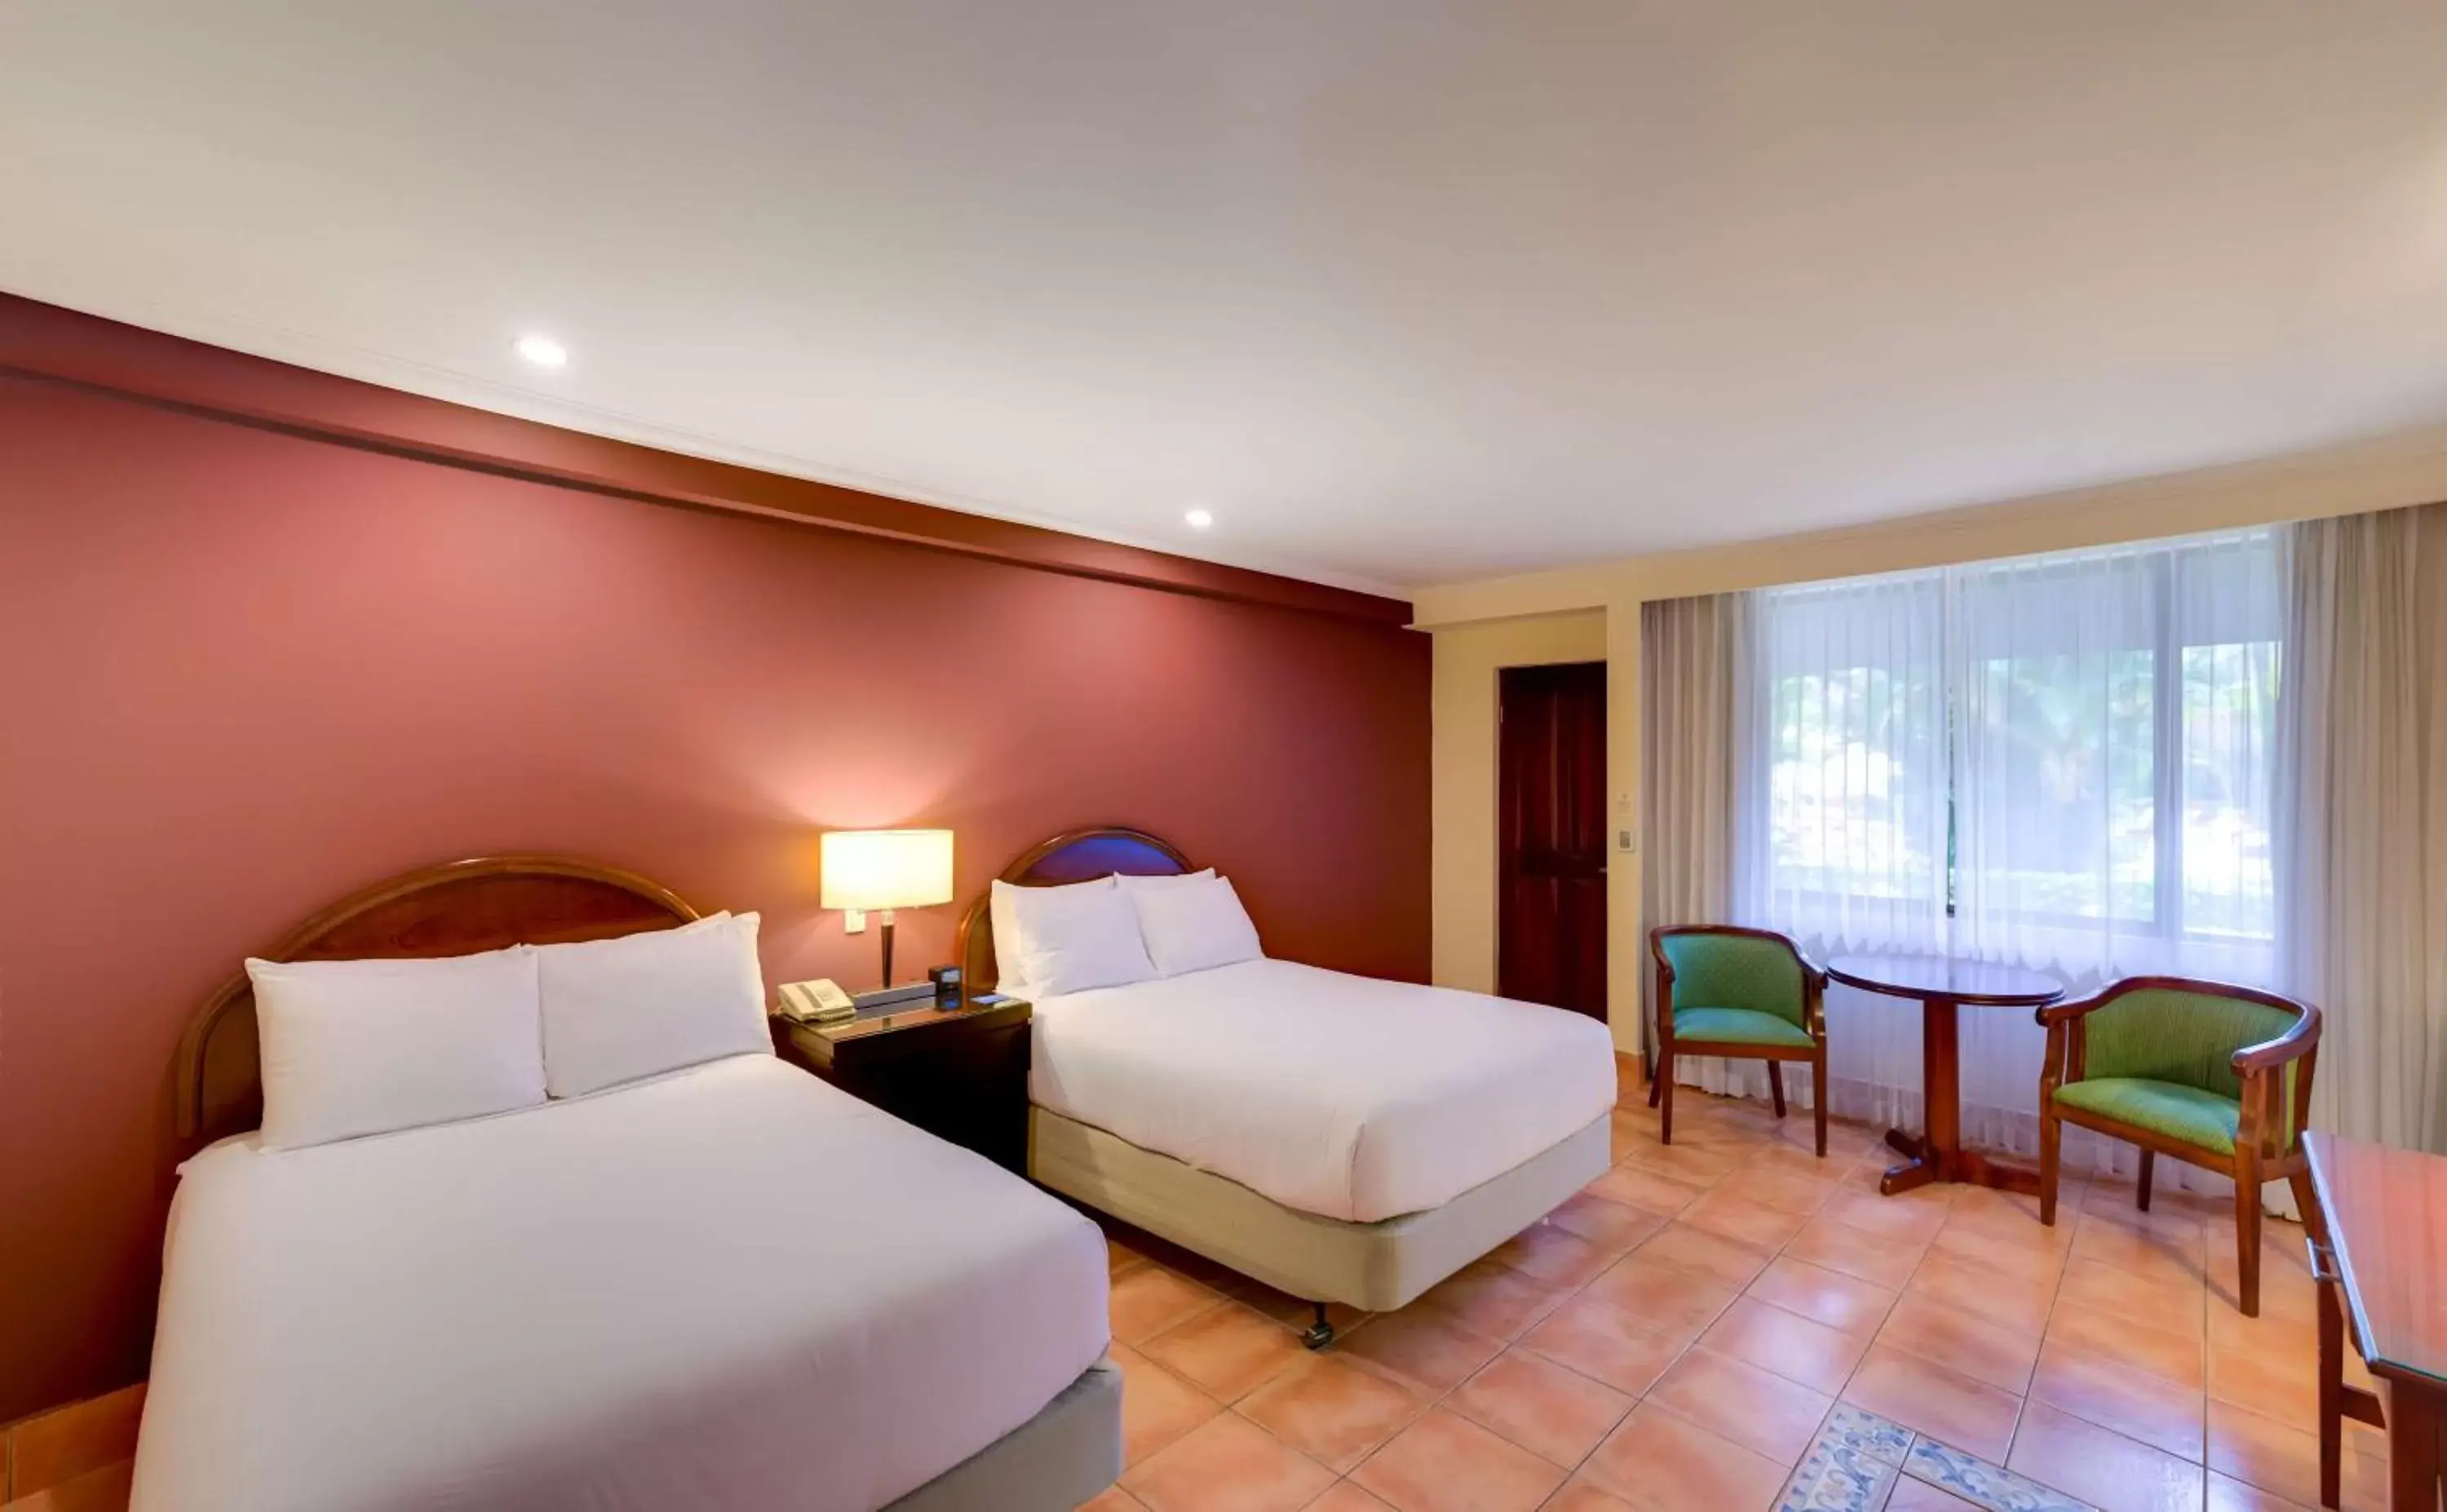 Bed in Hilton Cariari DoubleTree San Jose - Costa Rica